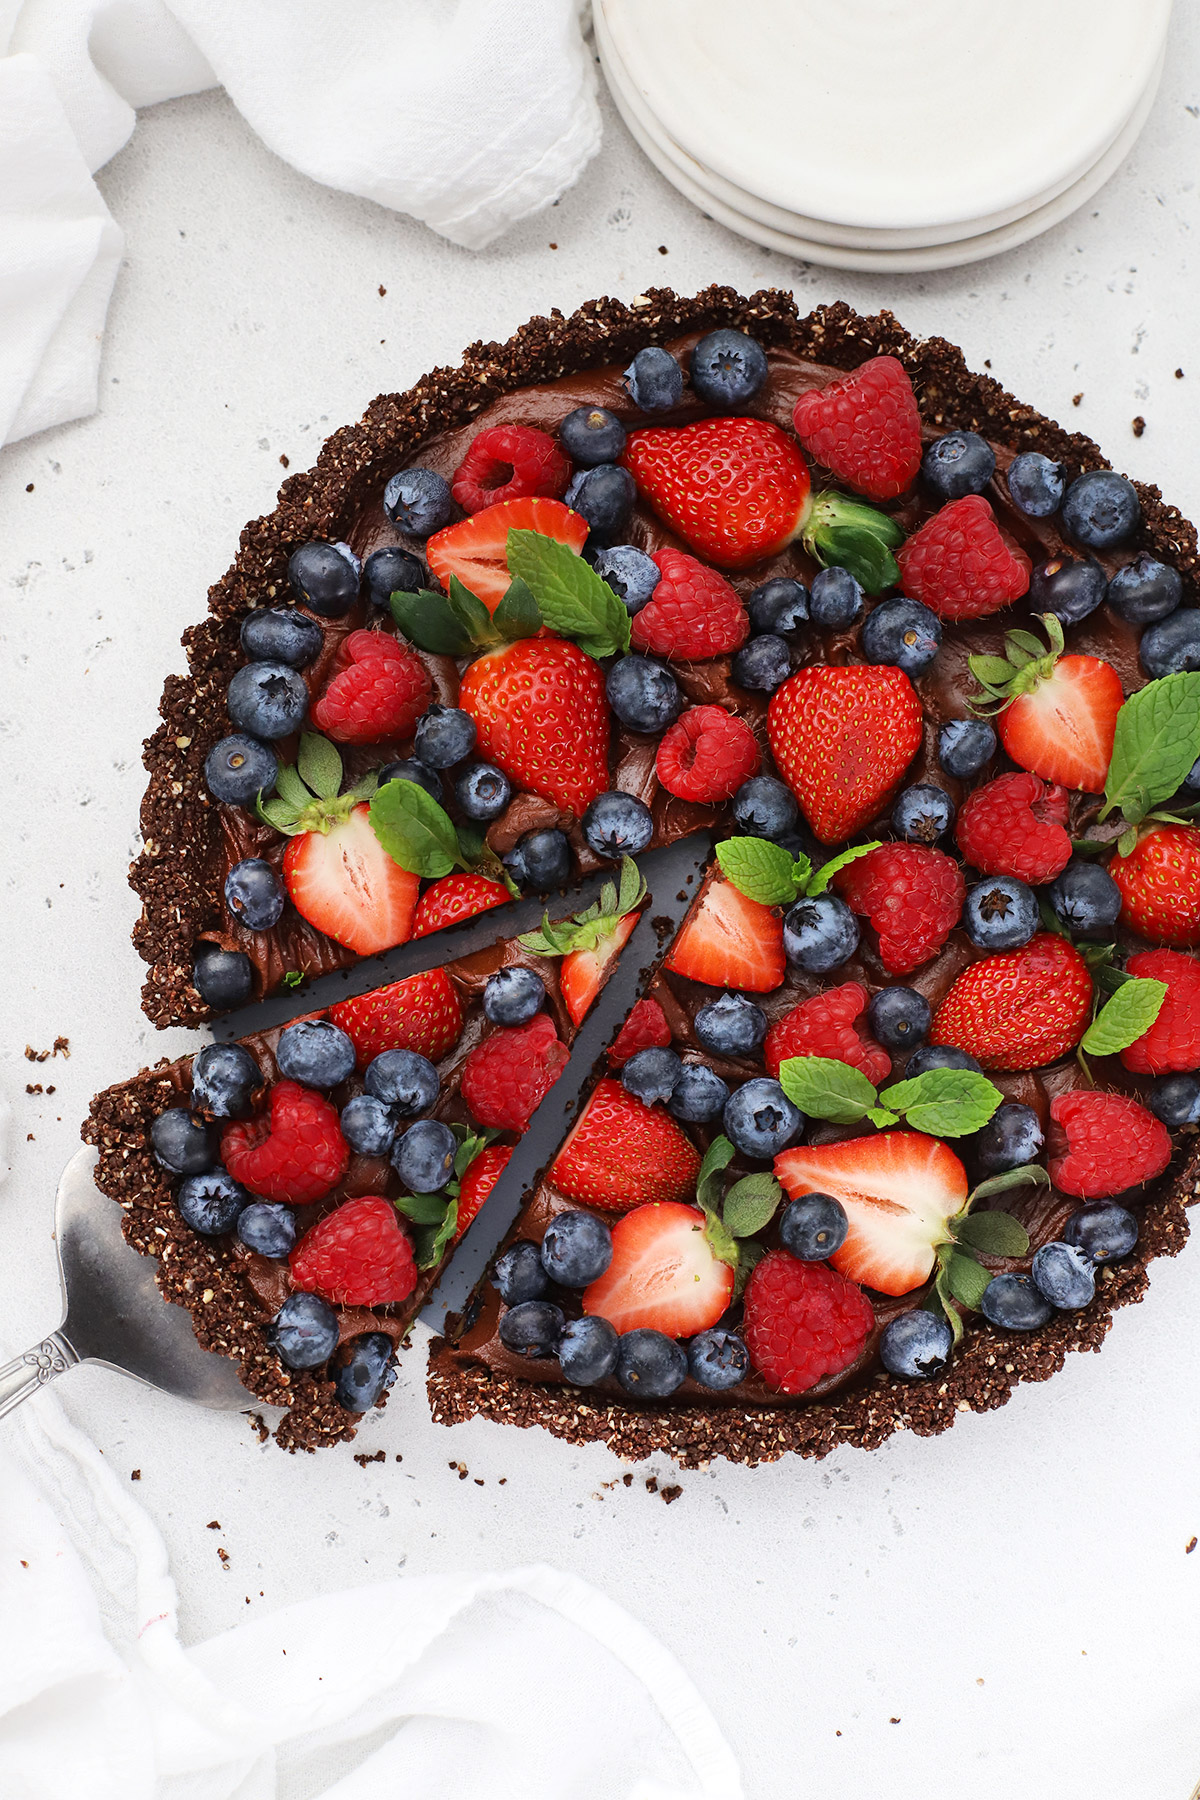 Chocolate tart with chocolate crust and fresh berries